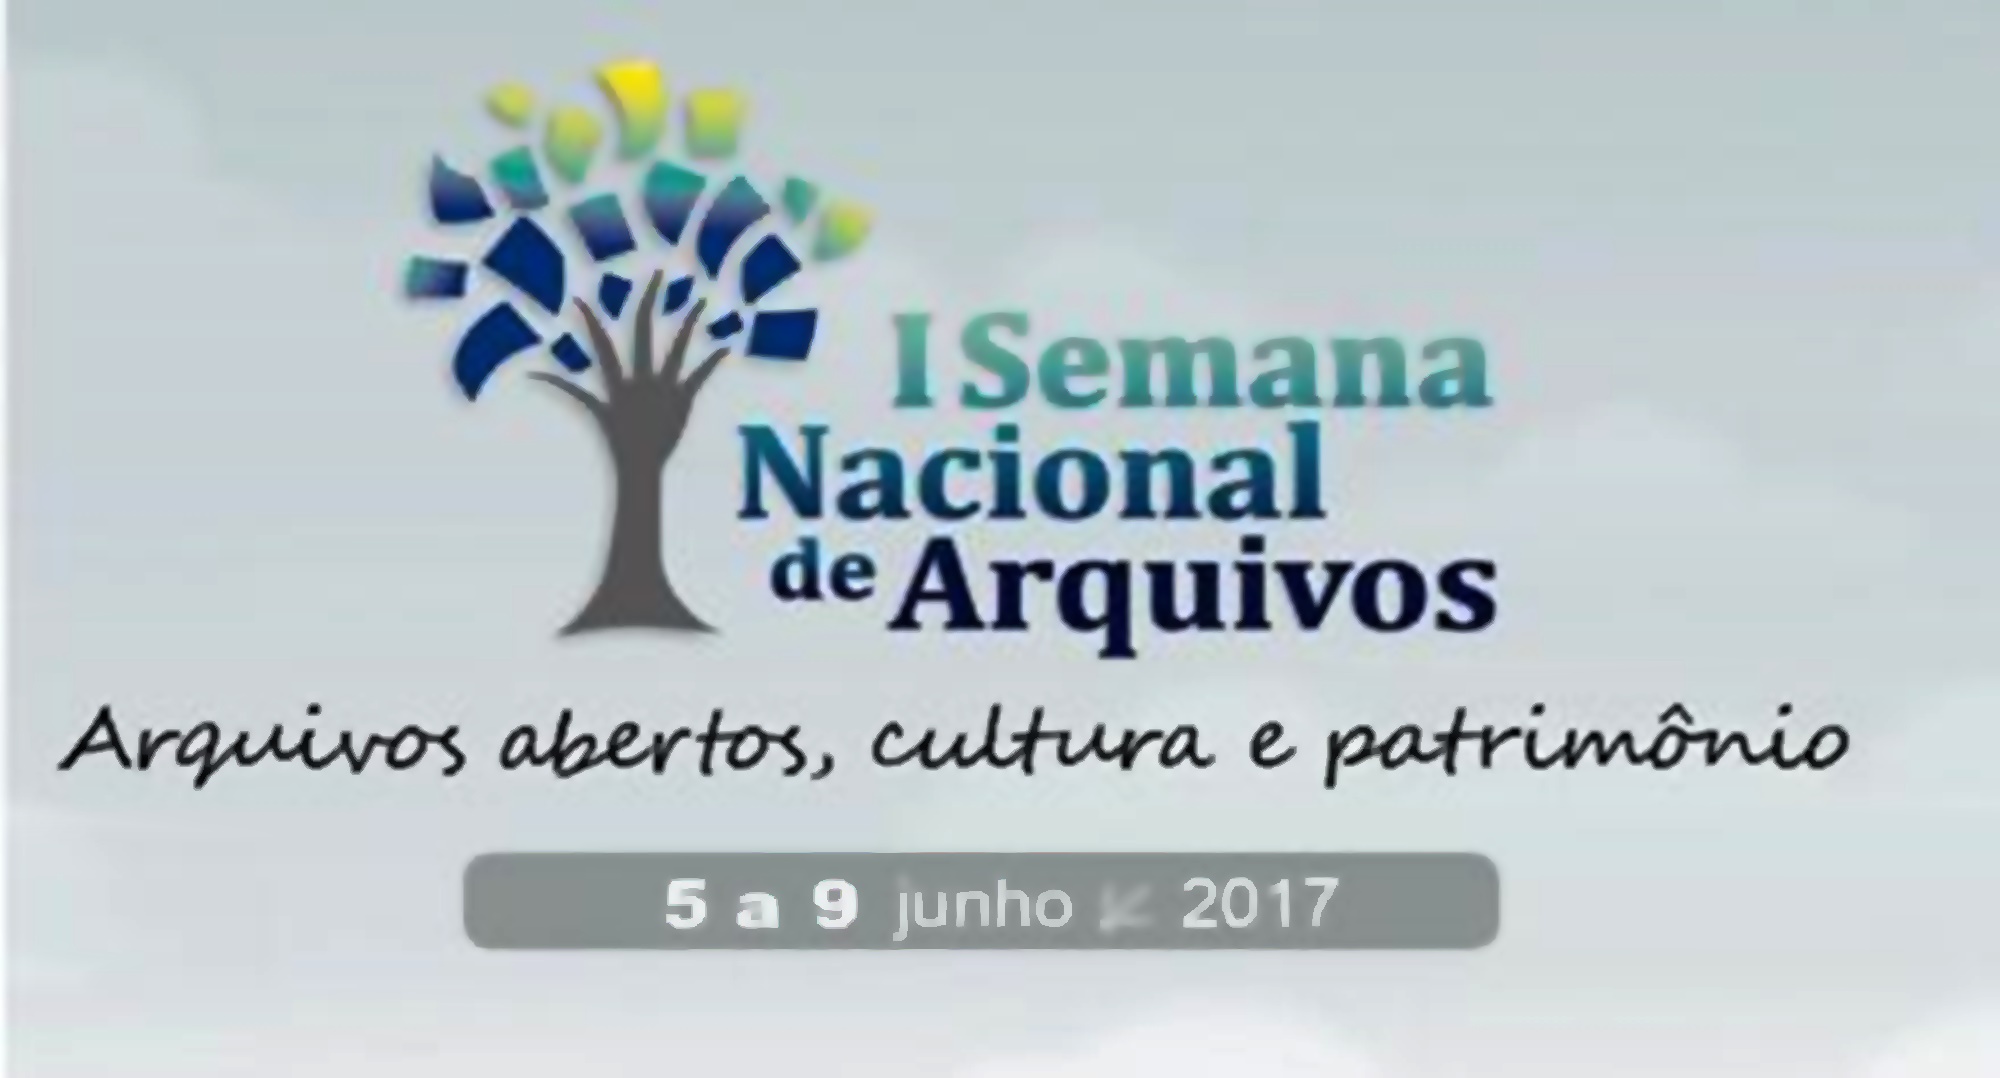 1ª SEMANA NACIONAL DE ARQUIVO: Arquivos abertos, cultura e patrimônio